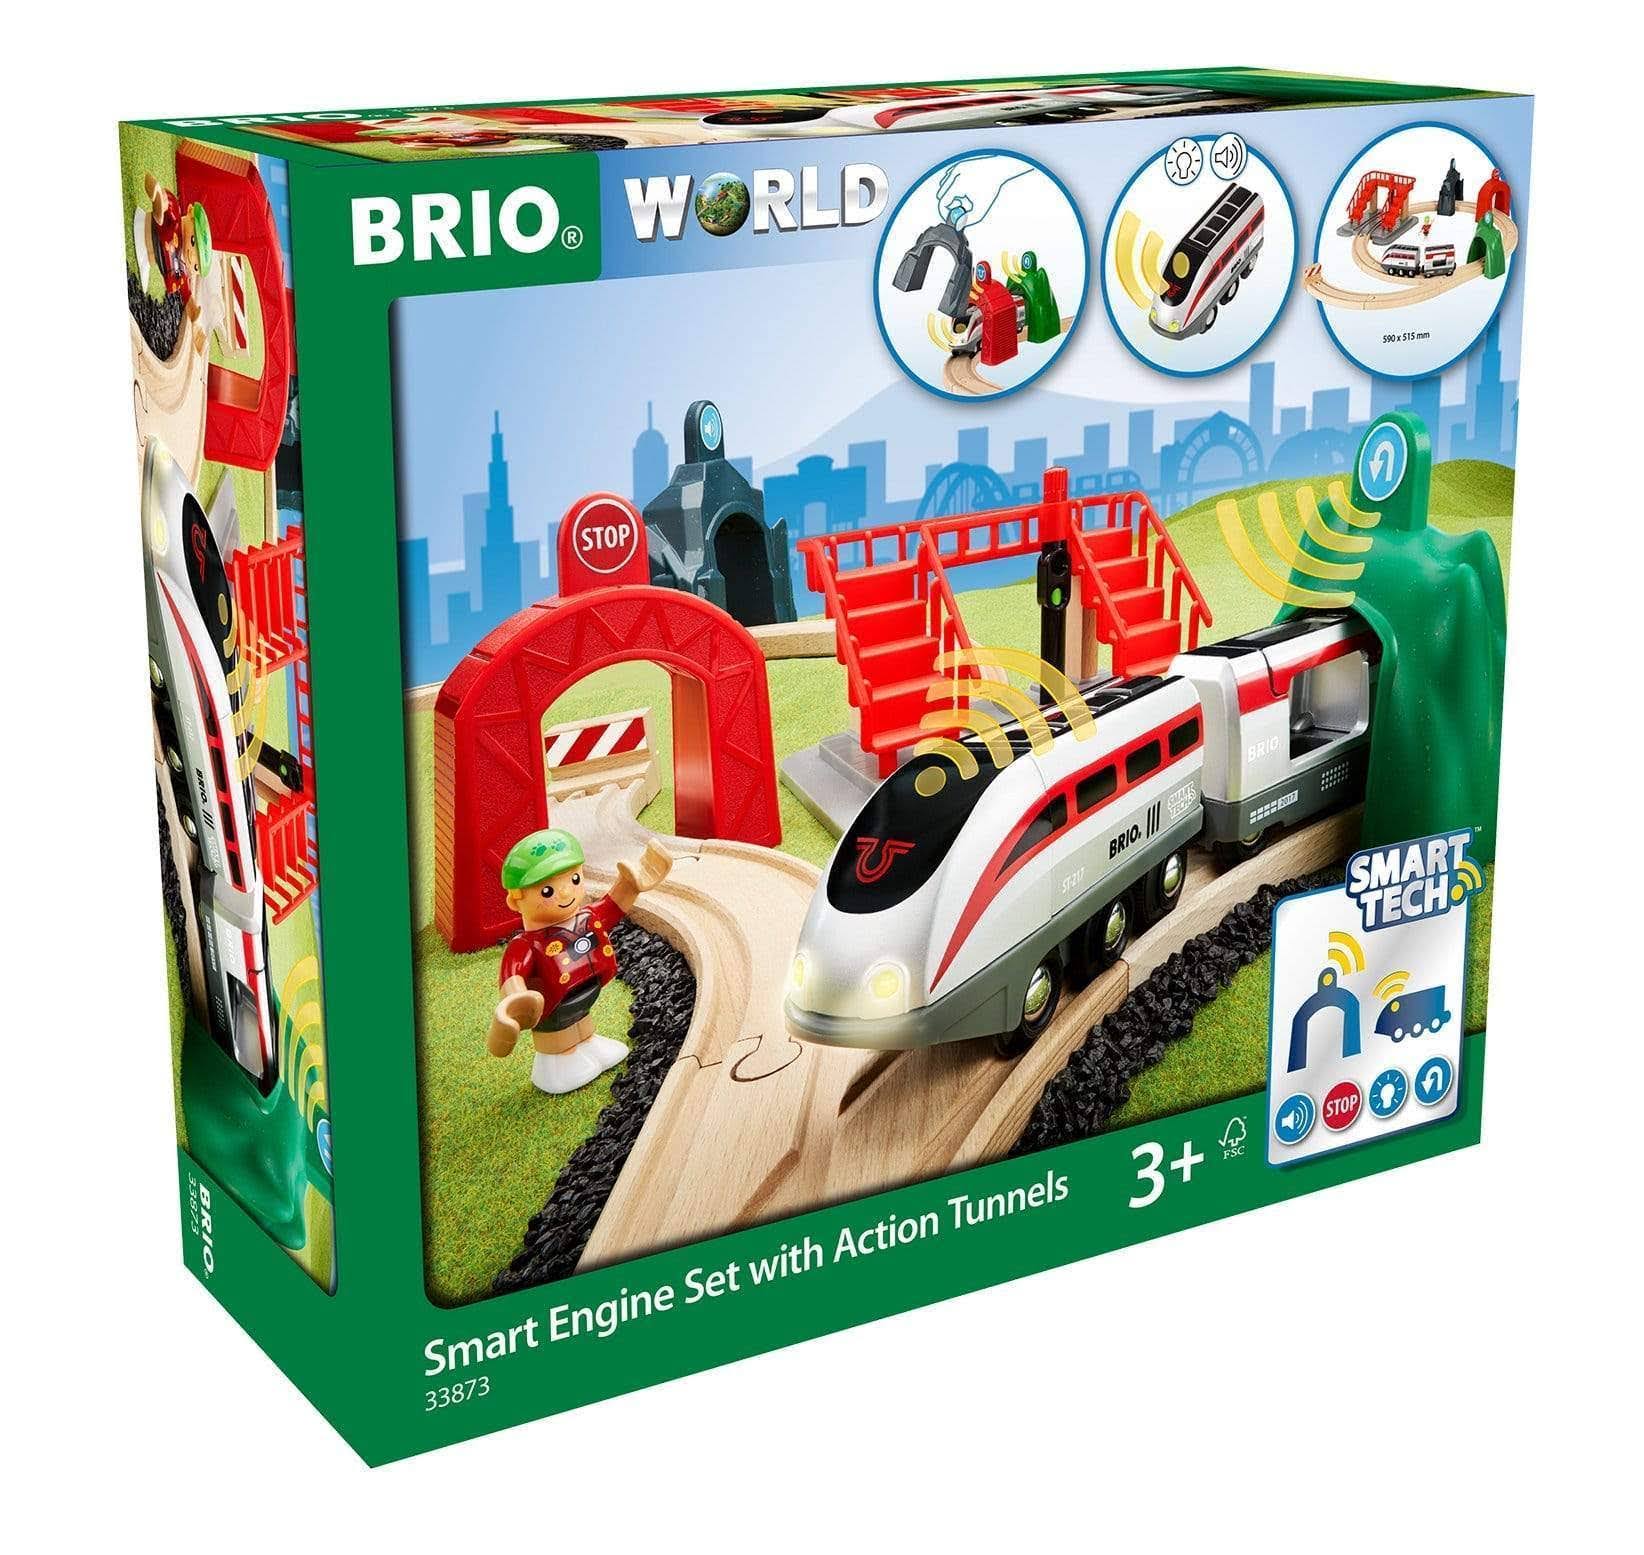 Brio Smart Tech Wooden Train Engine Toy Set